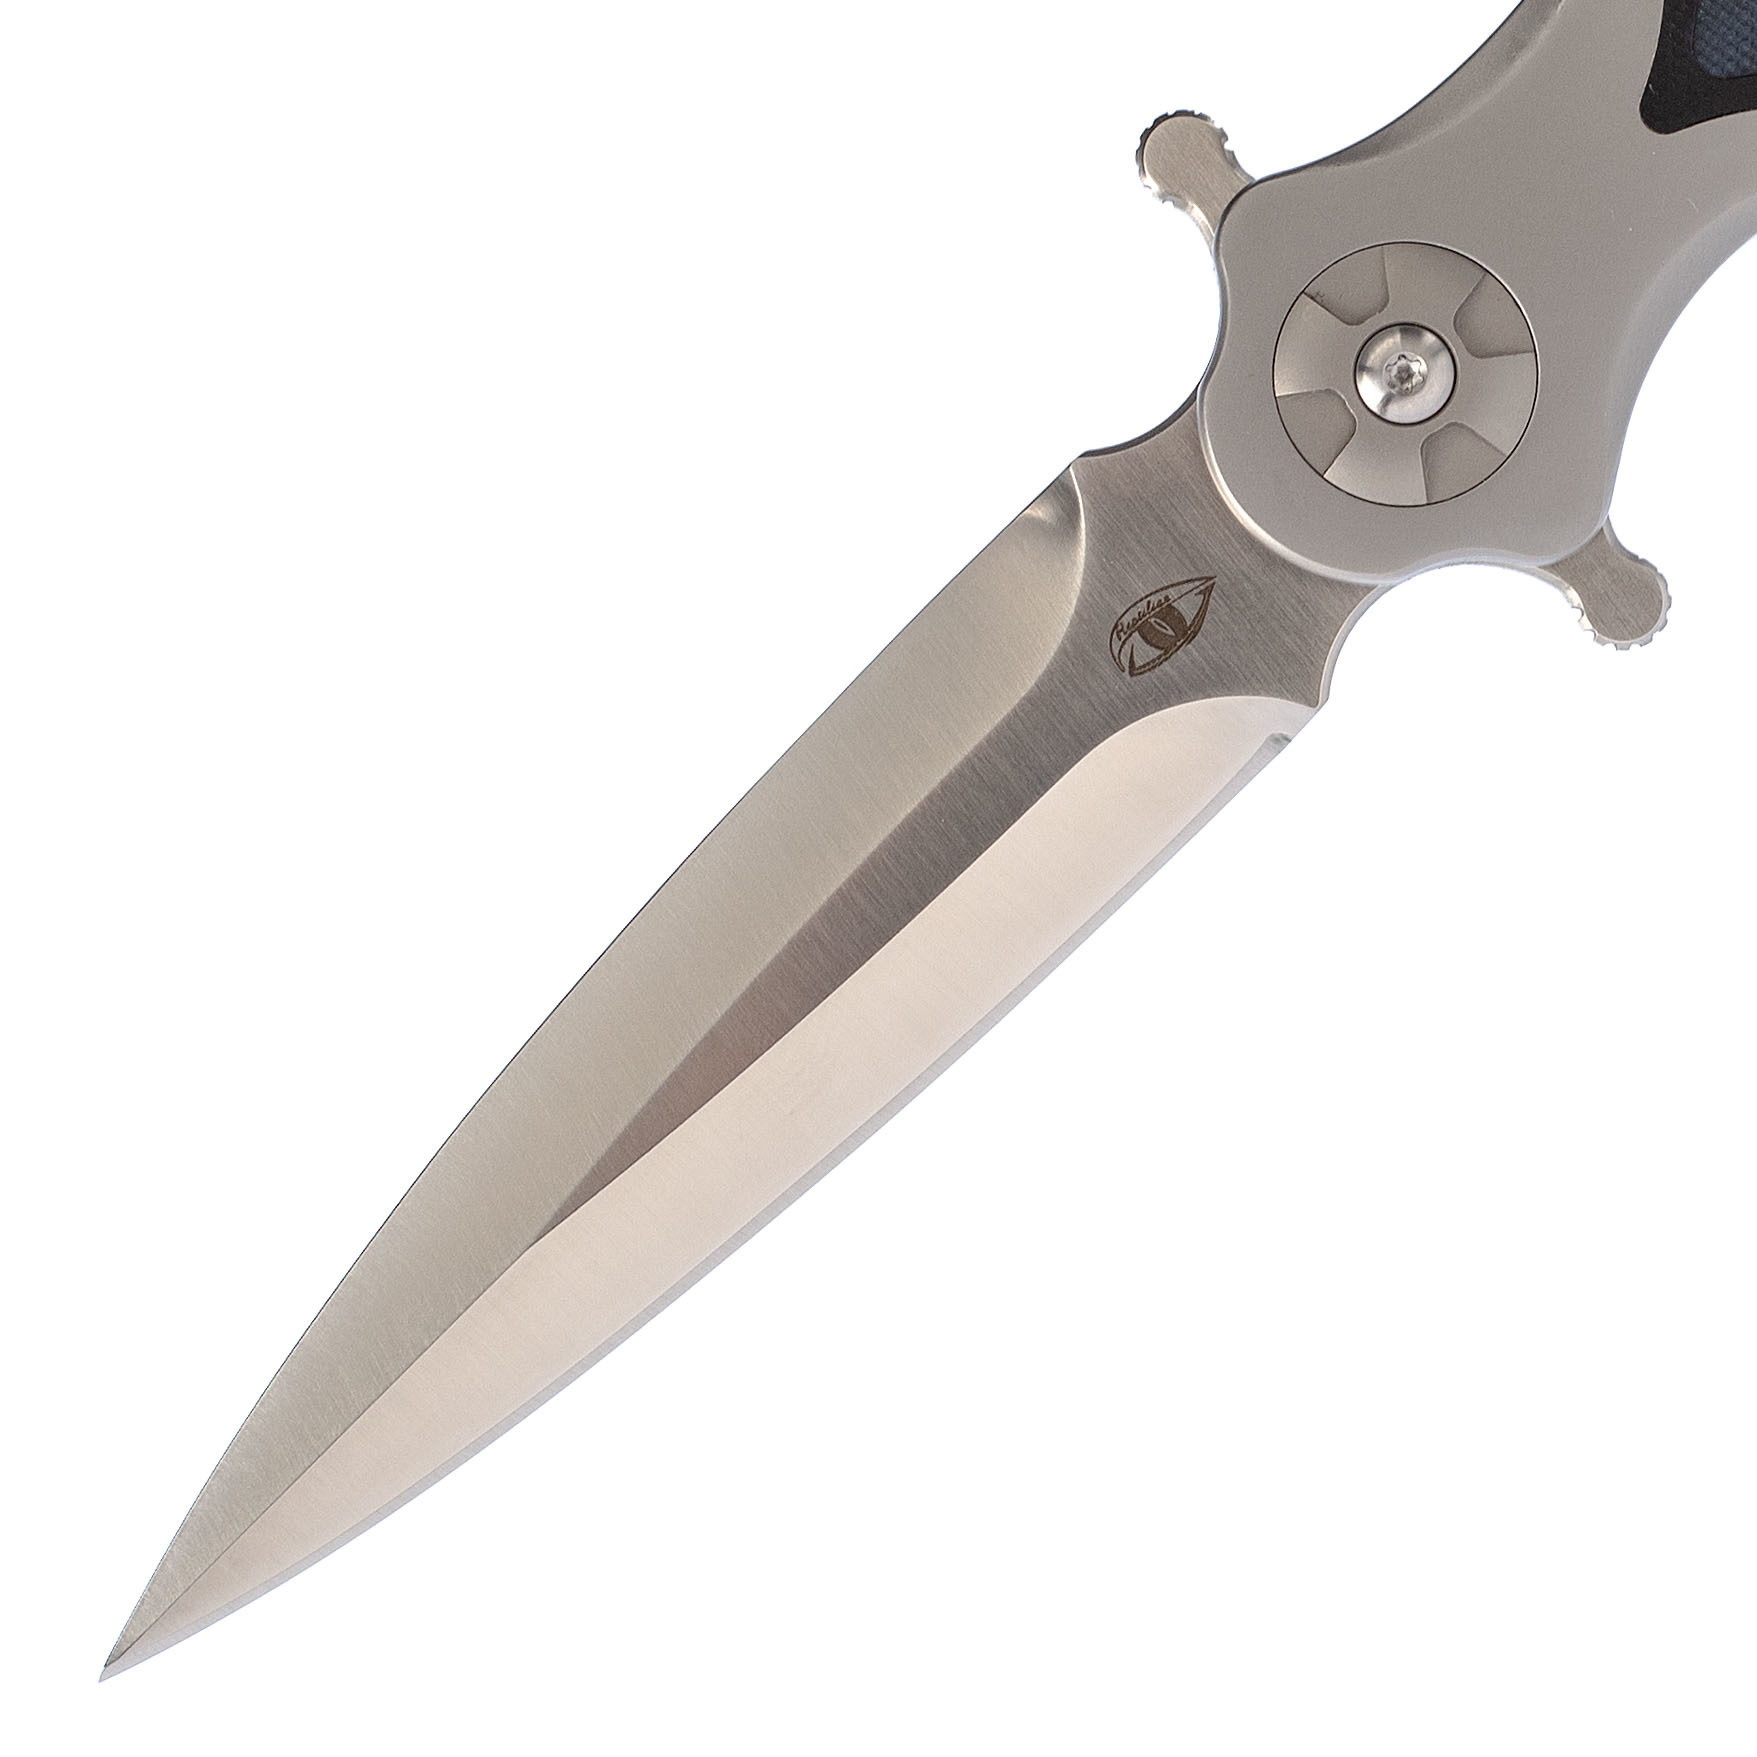 Складной нож Магистр 3-1, сталь D2, вставка G10 Blue - фото 3